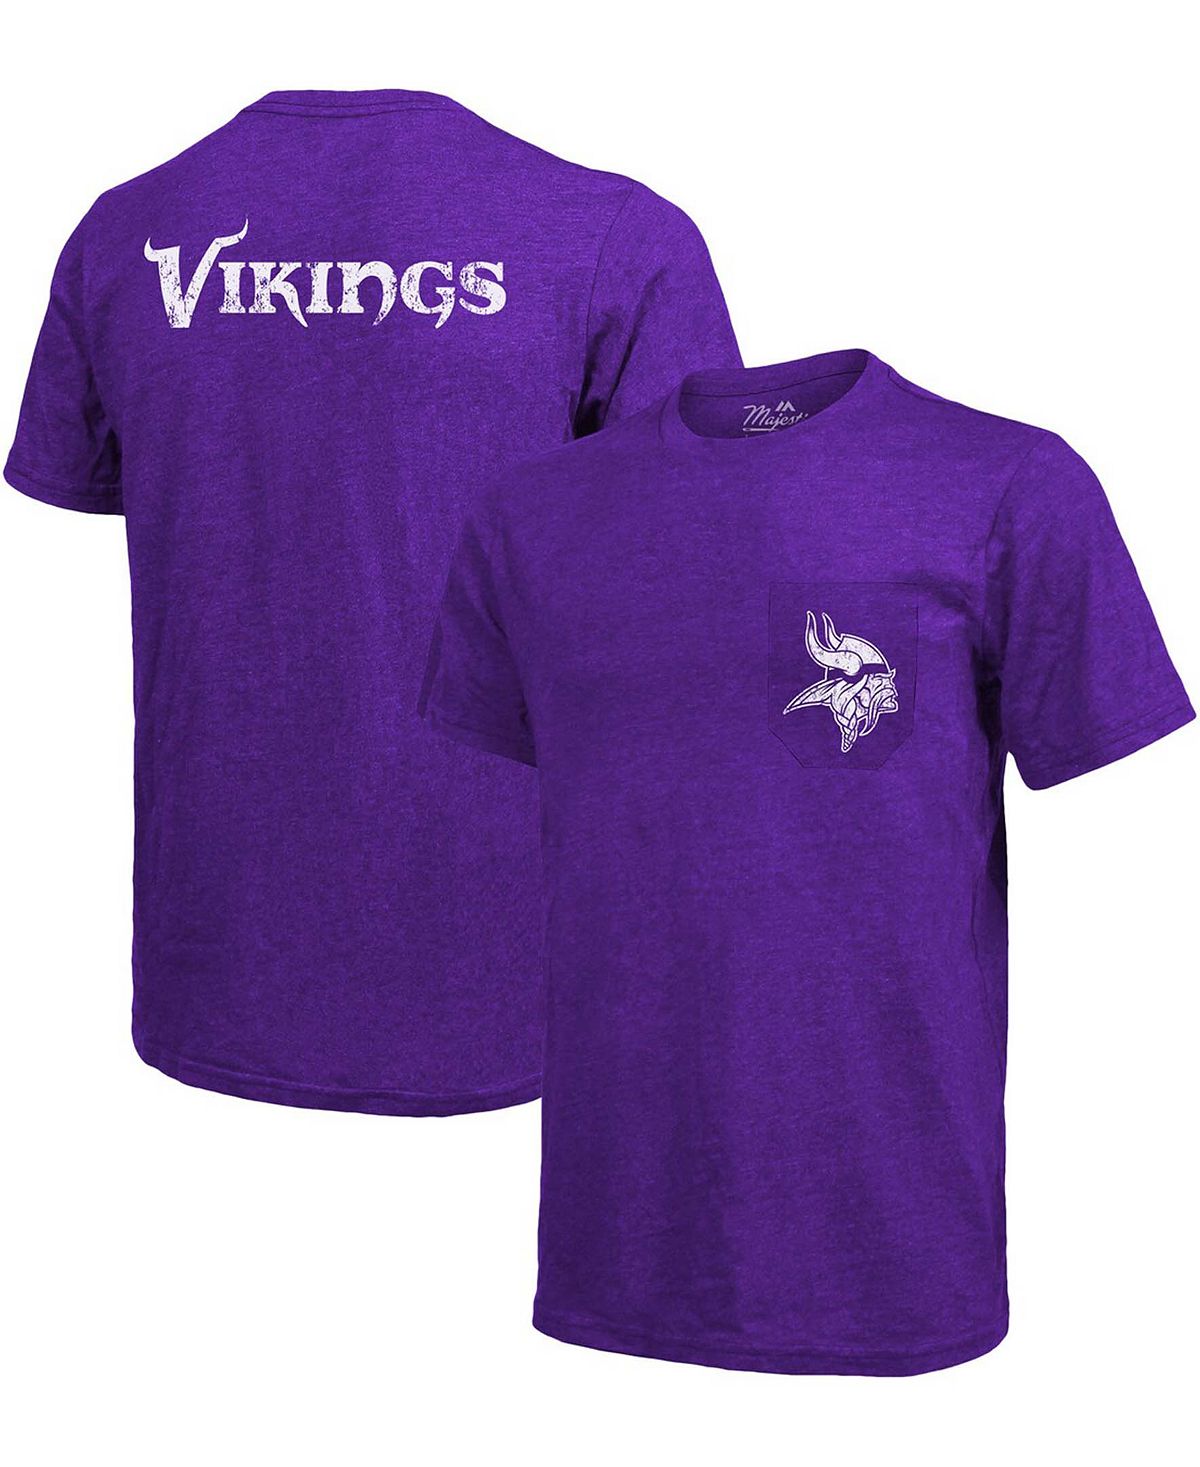 Футболка minnesota vikings tri-blend pocket pocket - пурпурный Majestic, фиолетовый футболка с карманами tri blend threads detroit lions синяя majestic